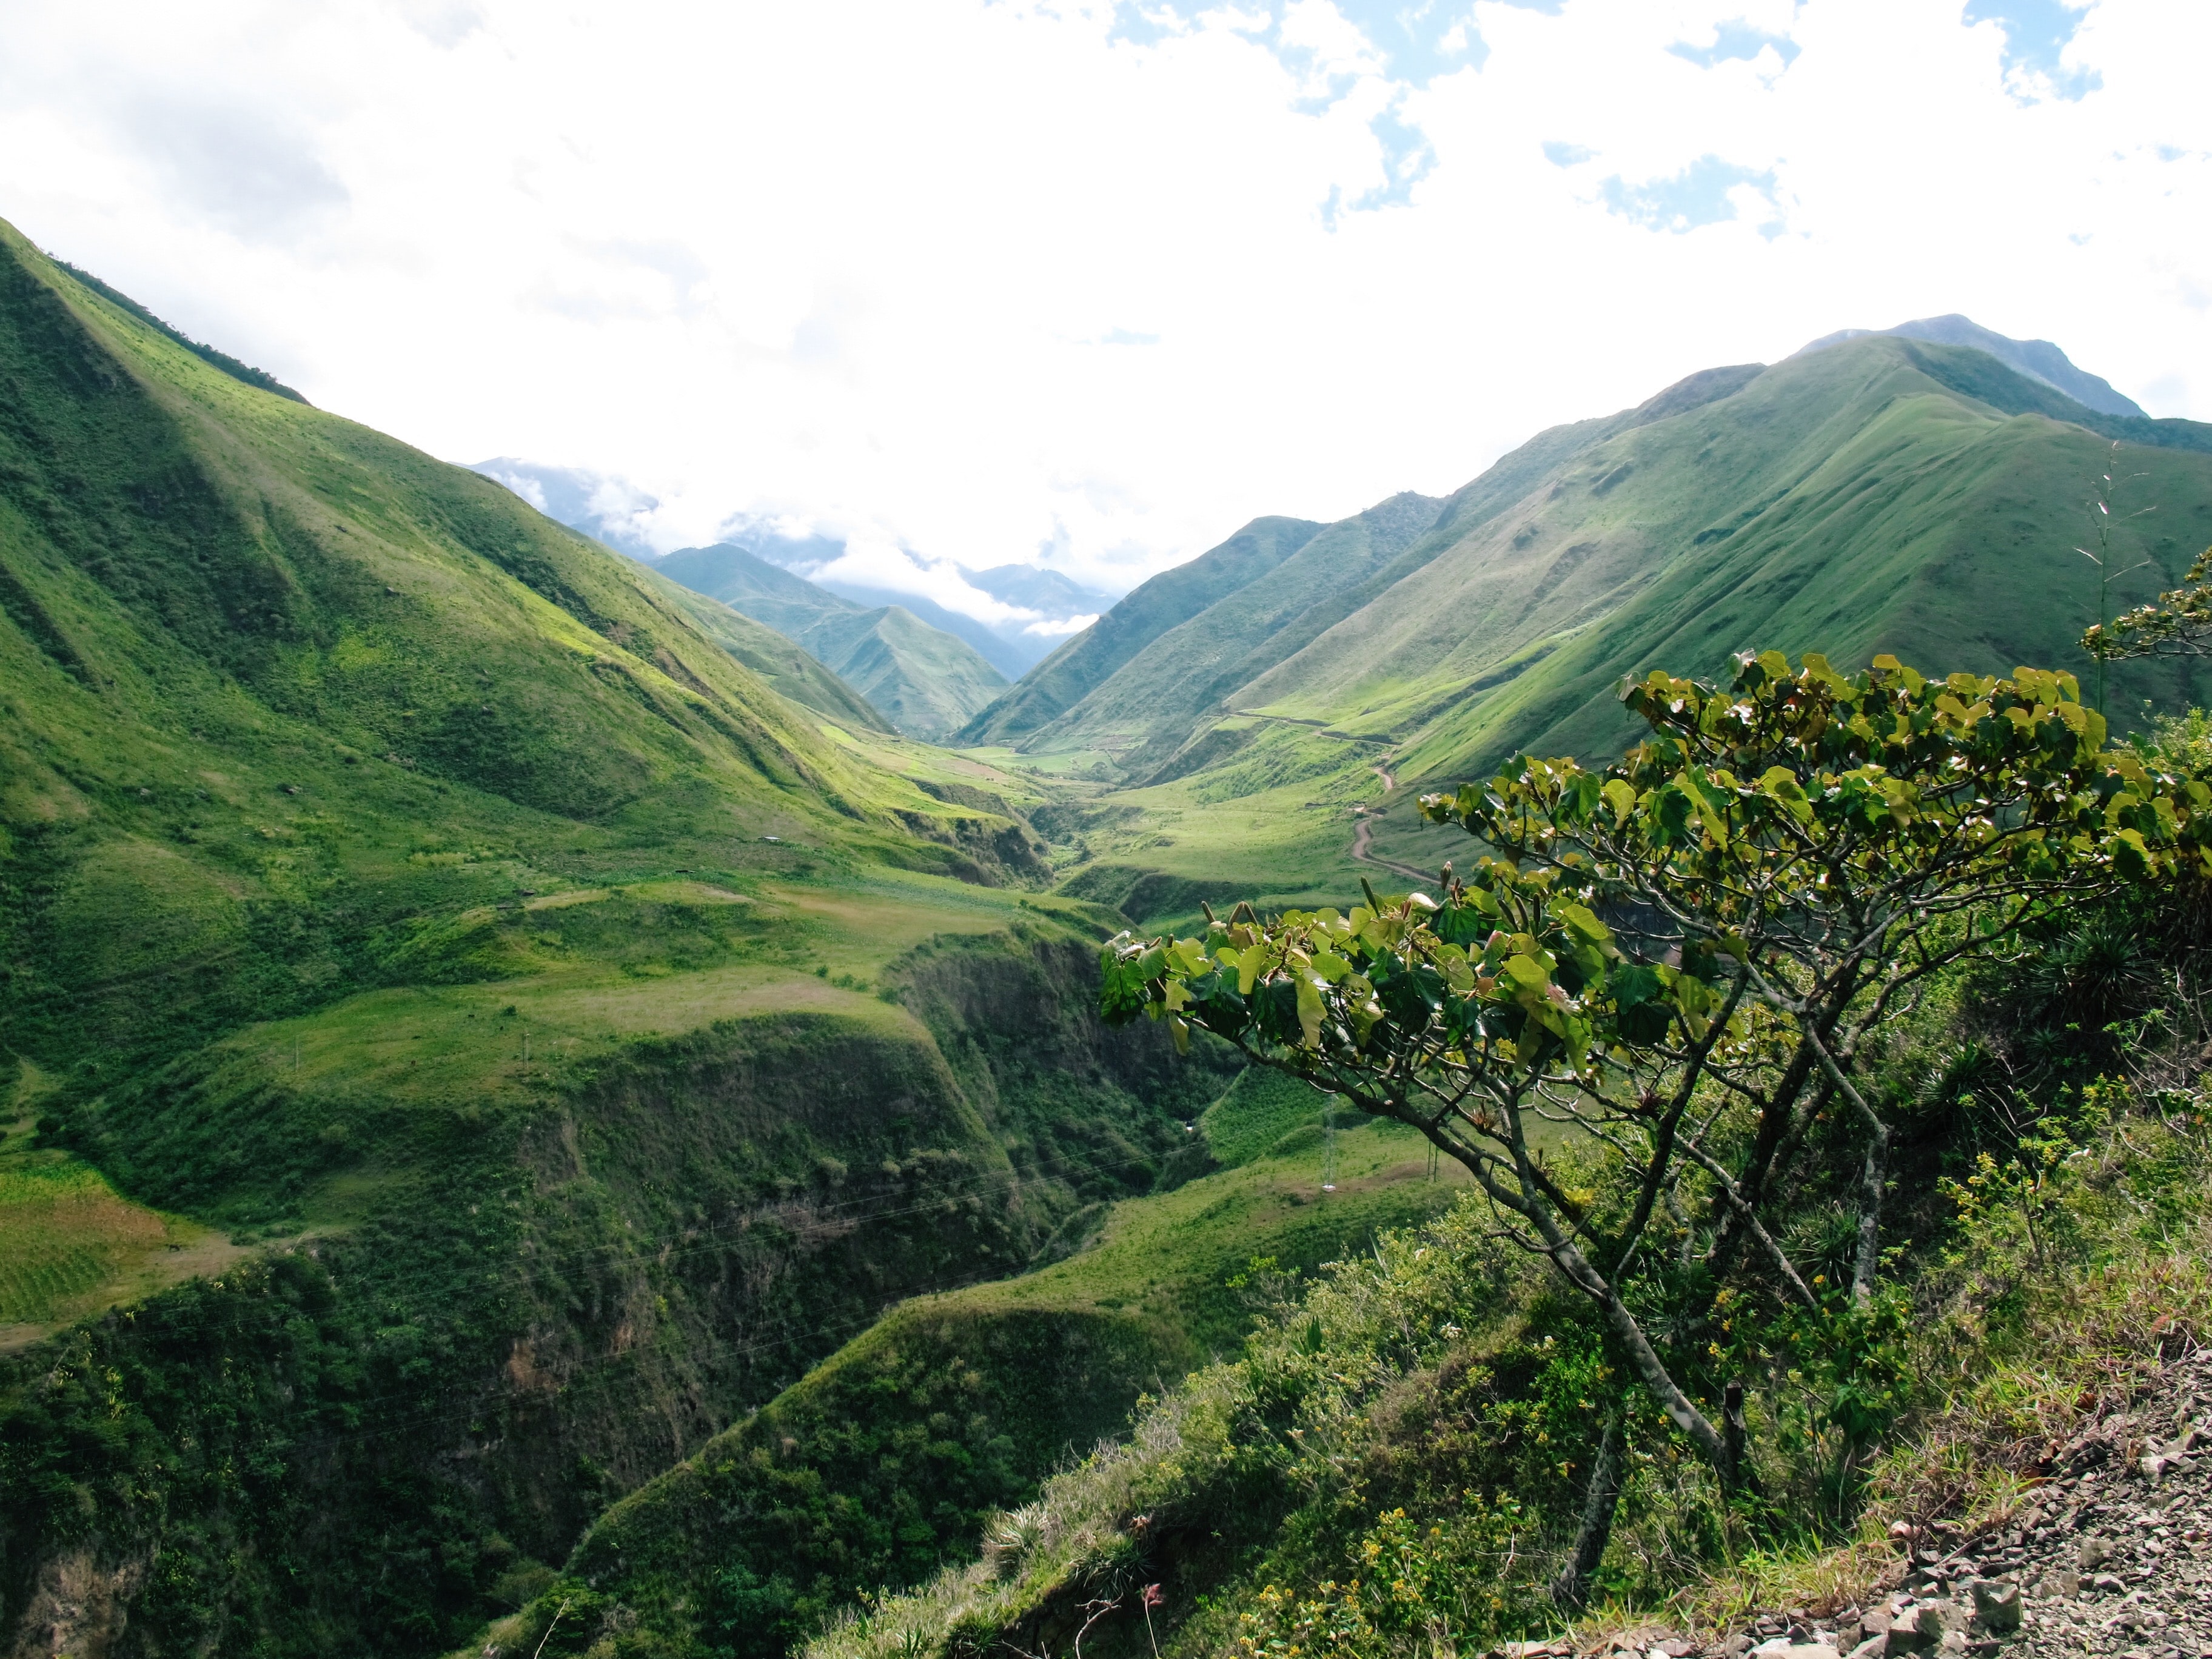 Mountains in Ecuador (photo credit: Reiseuhu via Unsplash)